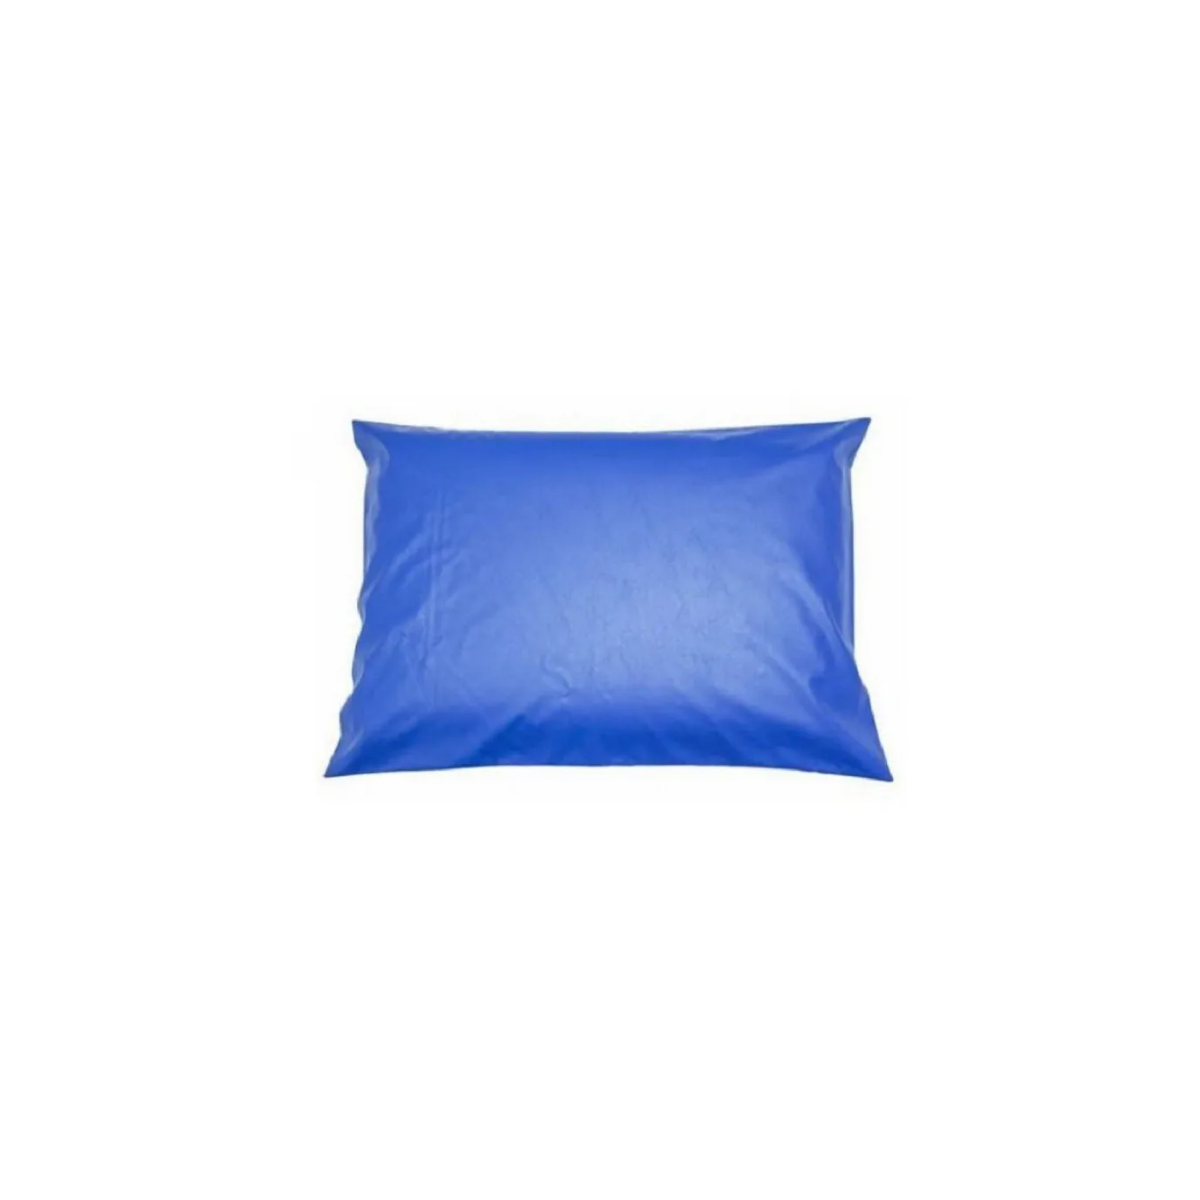 Capa Impermeavel Para Travesseiro Hospitalar Azul - Medida Especial